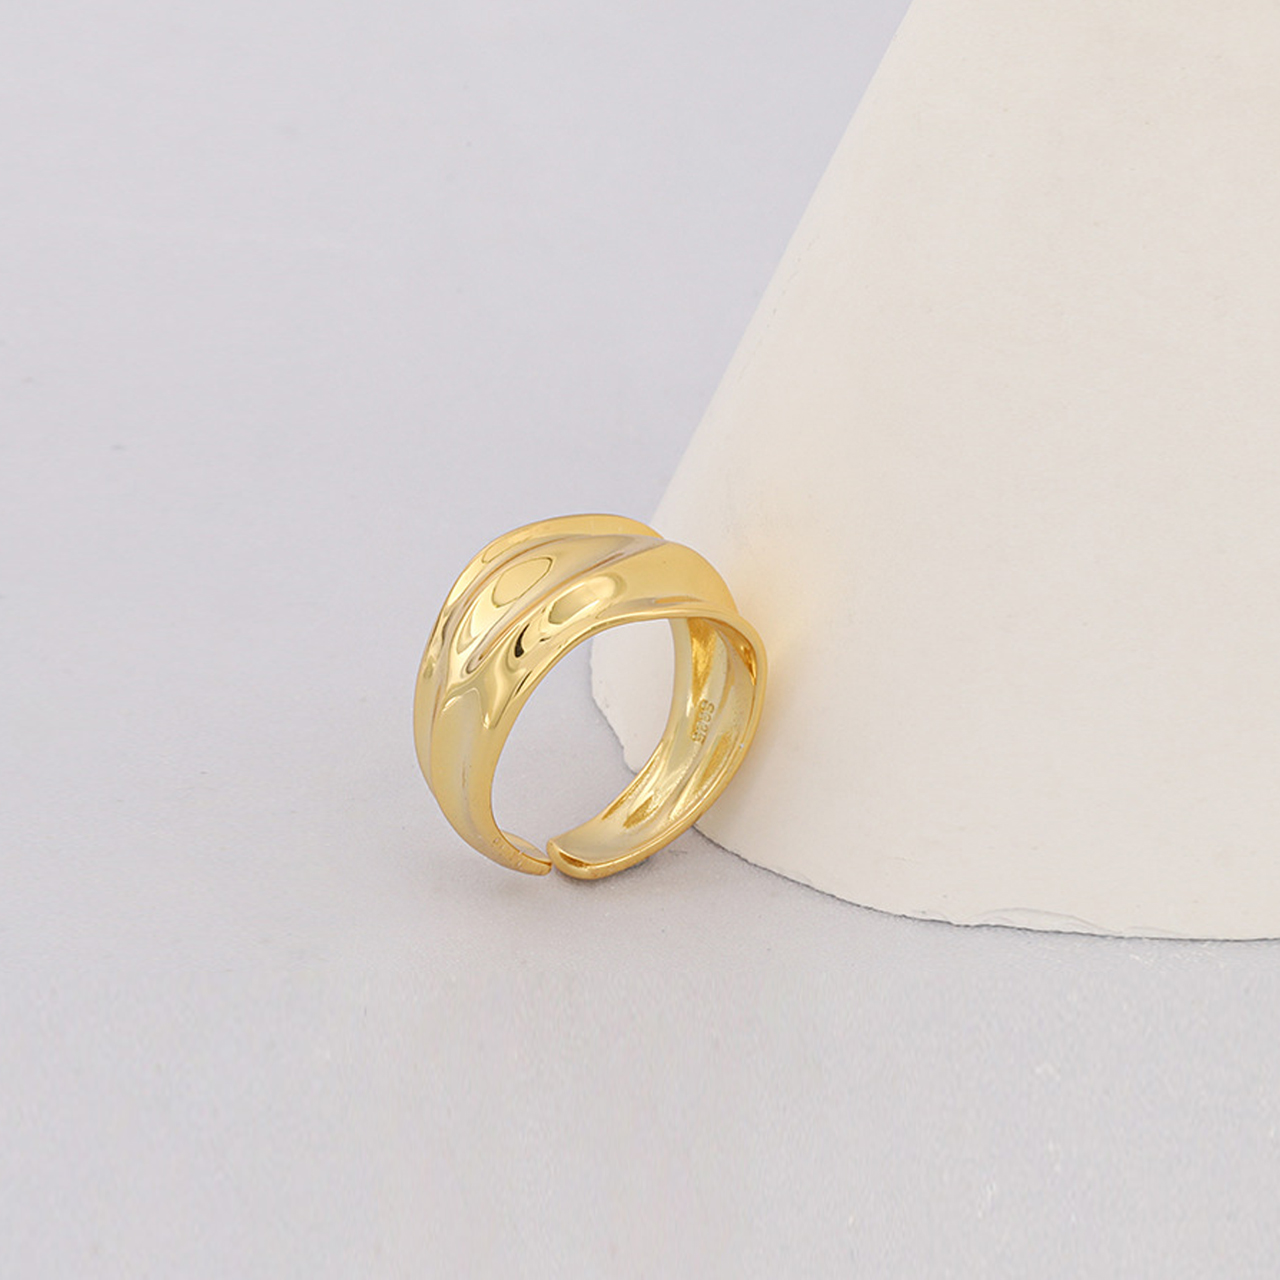 Irregular Concave Convex Gold Ring